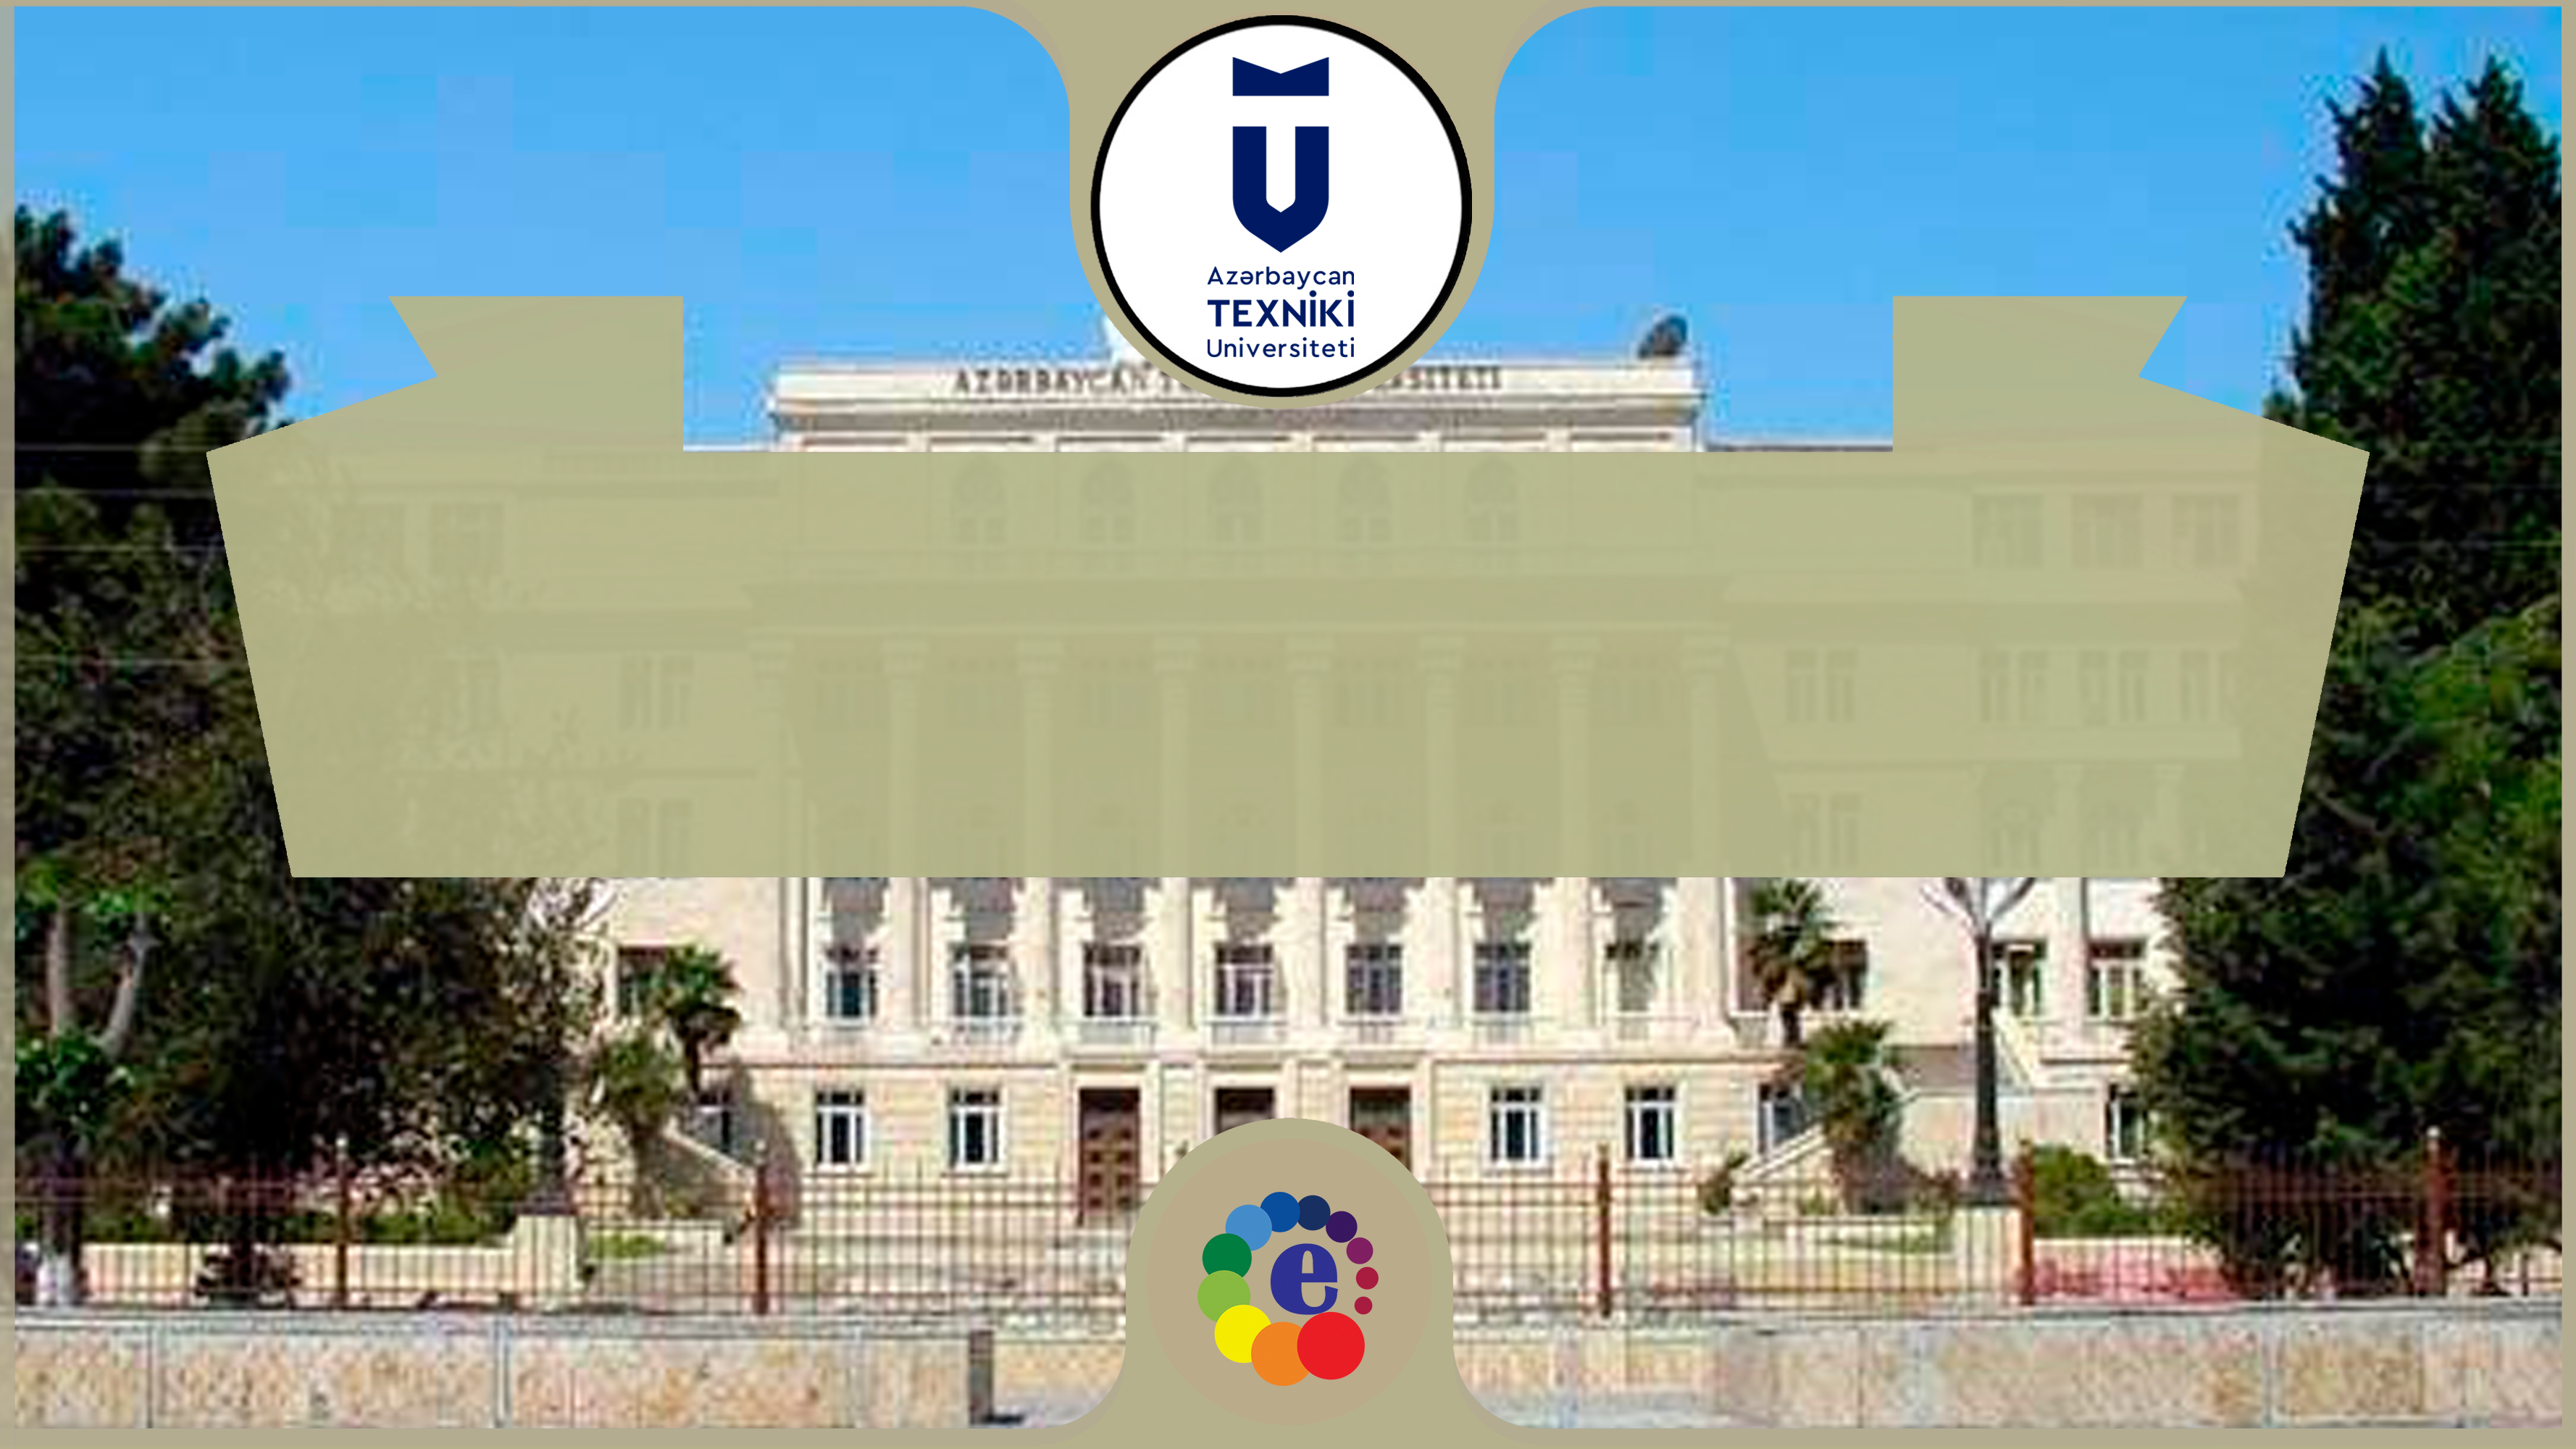 Azerbaycan Teknik Üniversitesi